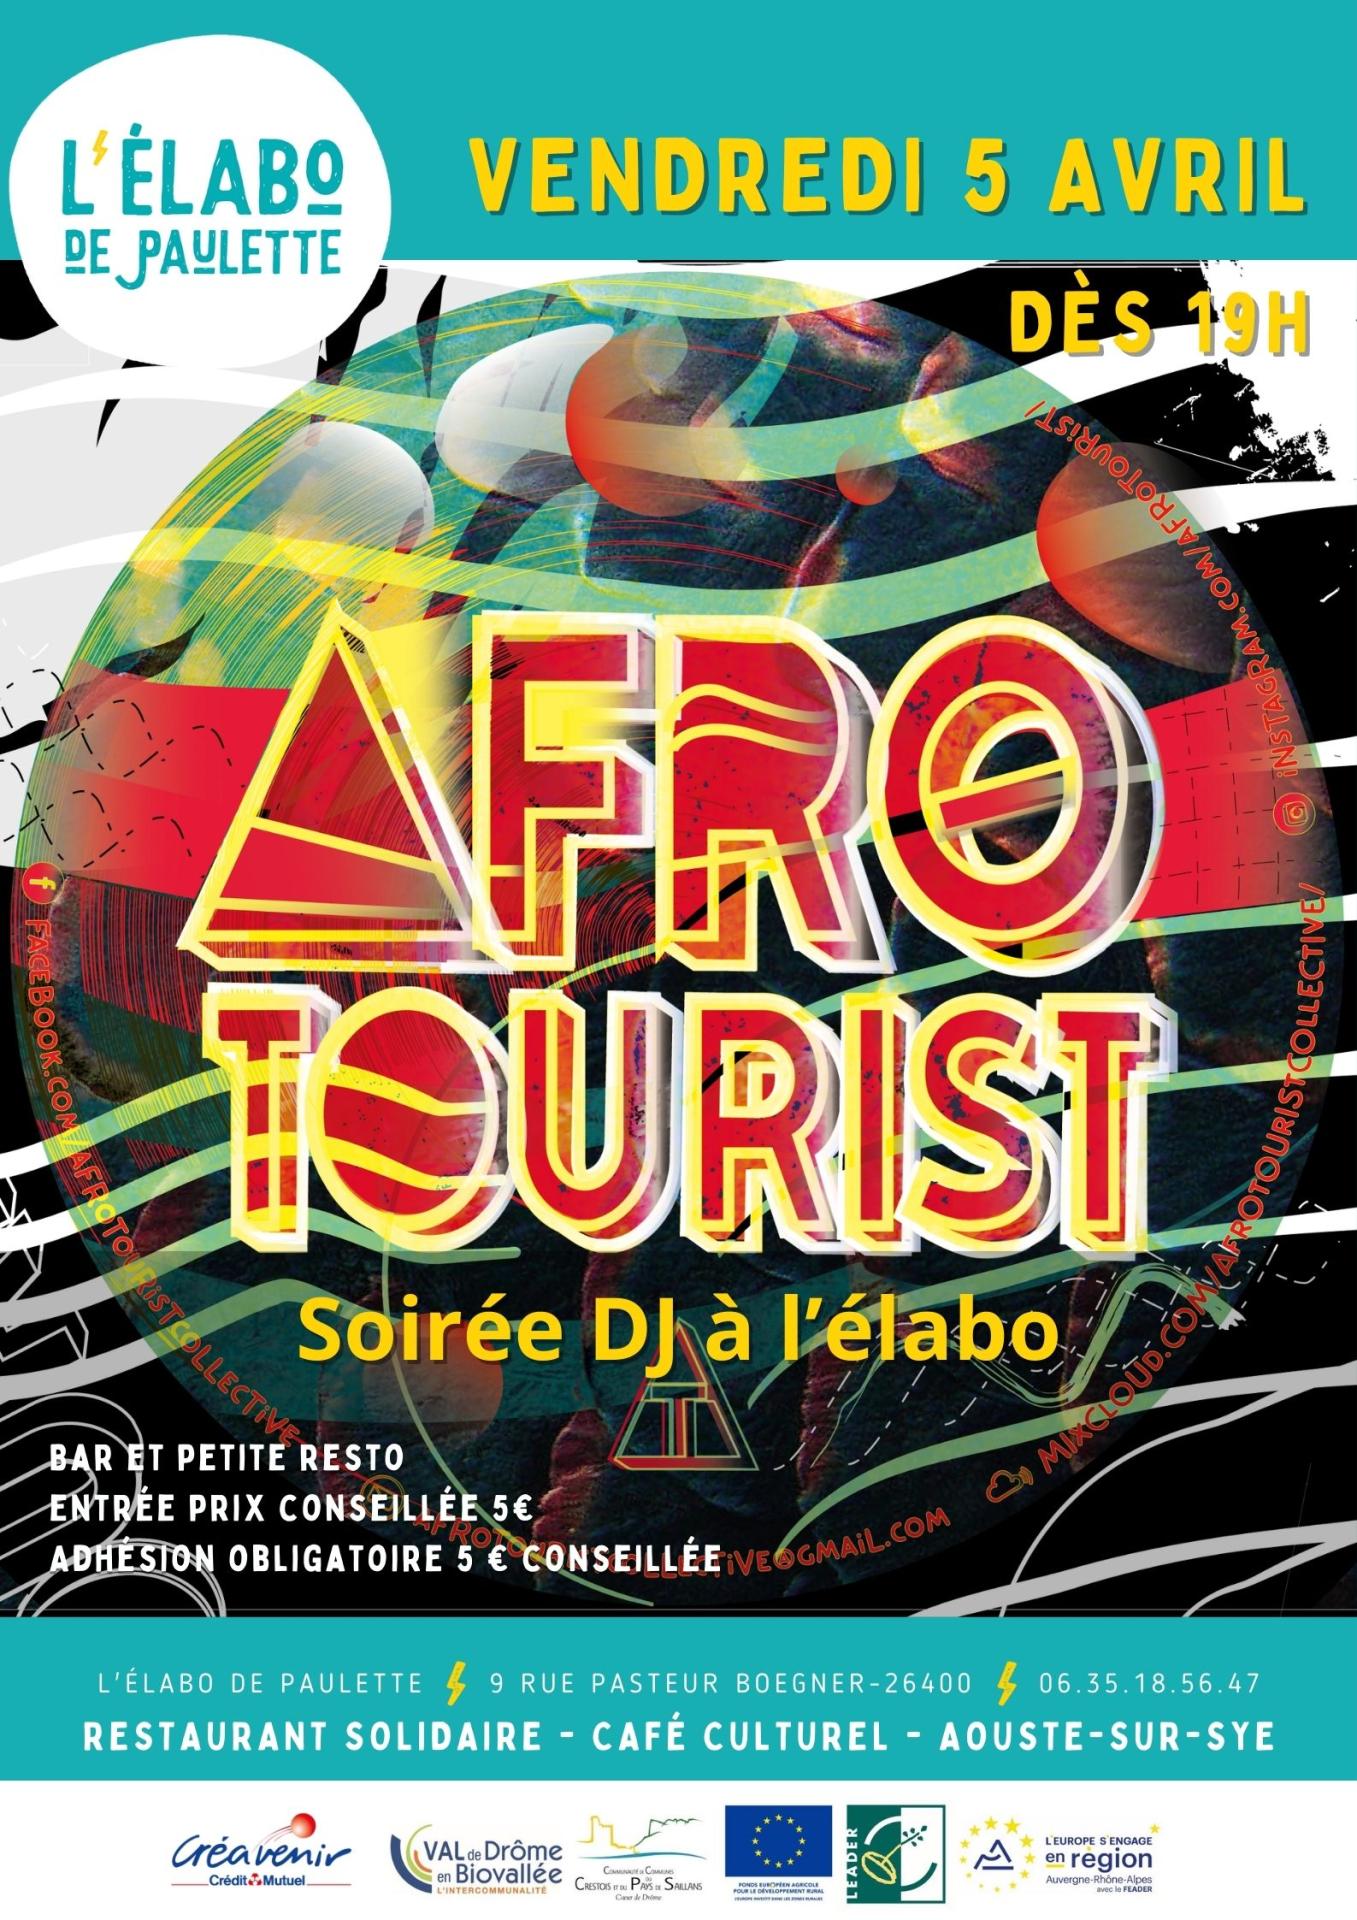 Afro tourist